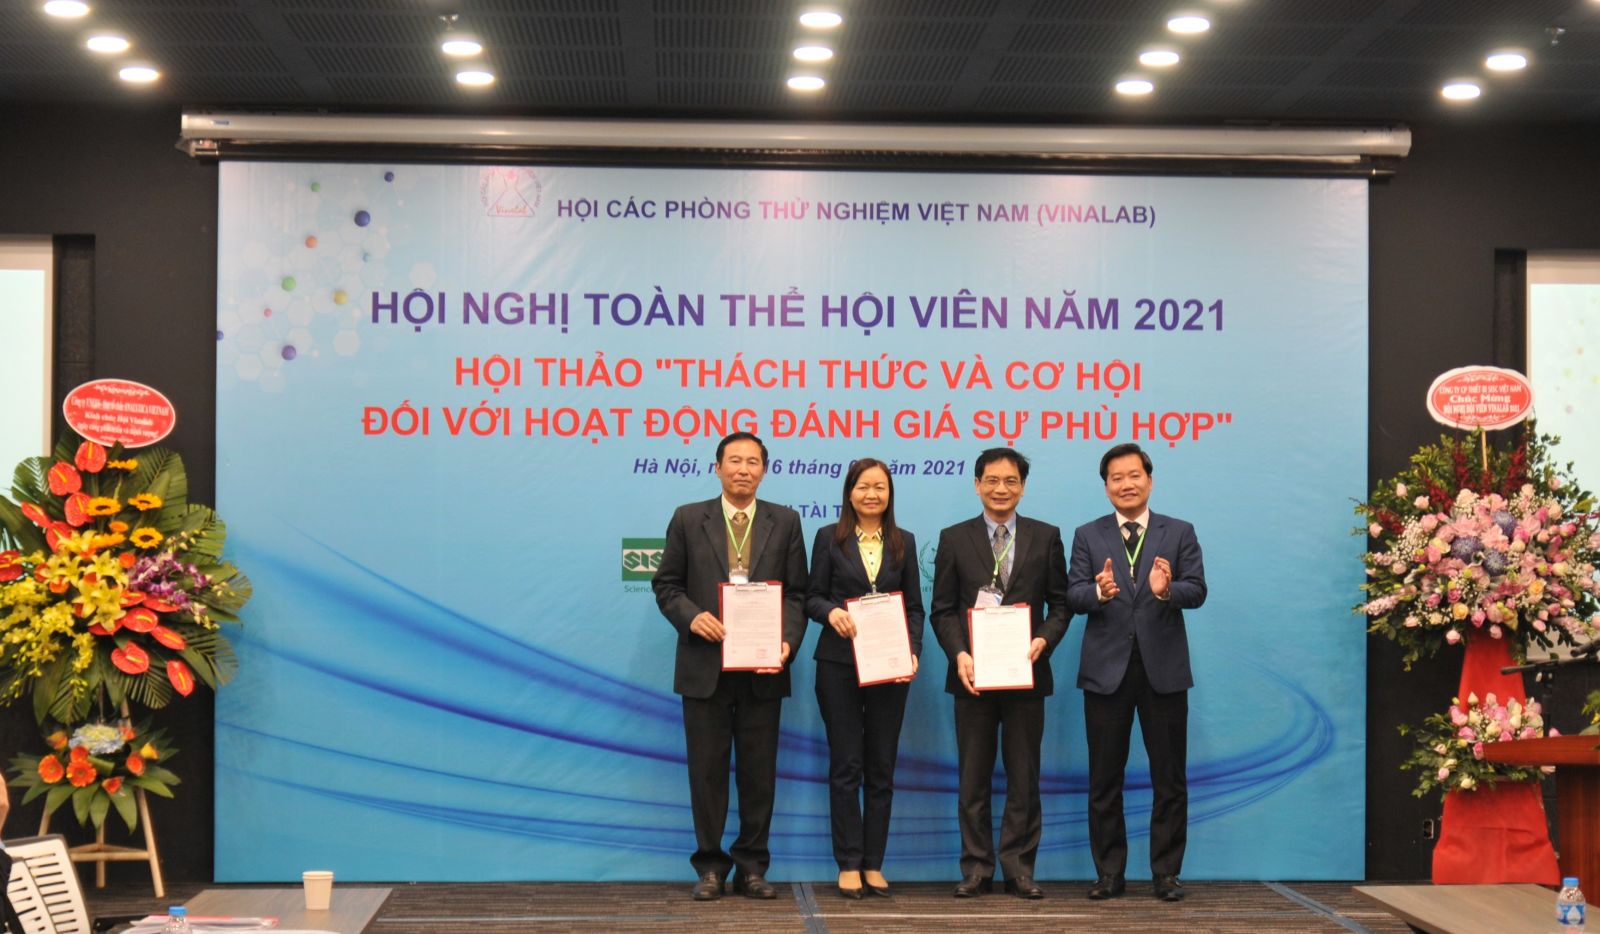 Chủ tịch Hội VinaLAB Nguyễn Hoàng Linh trao Quyết định bổ nhiệm các Trưởng ban 